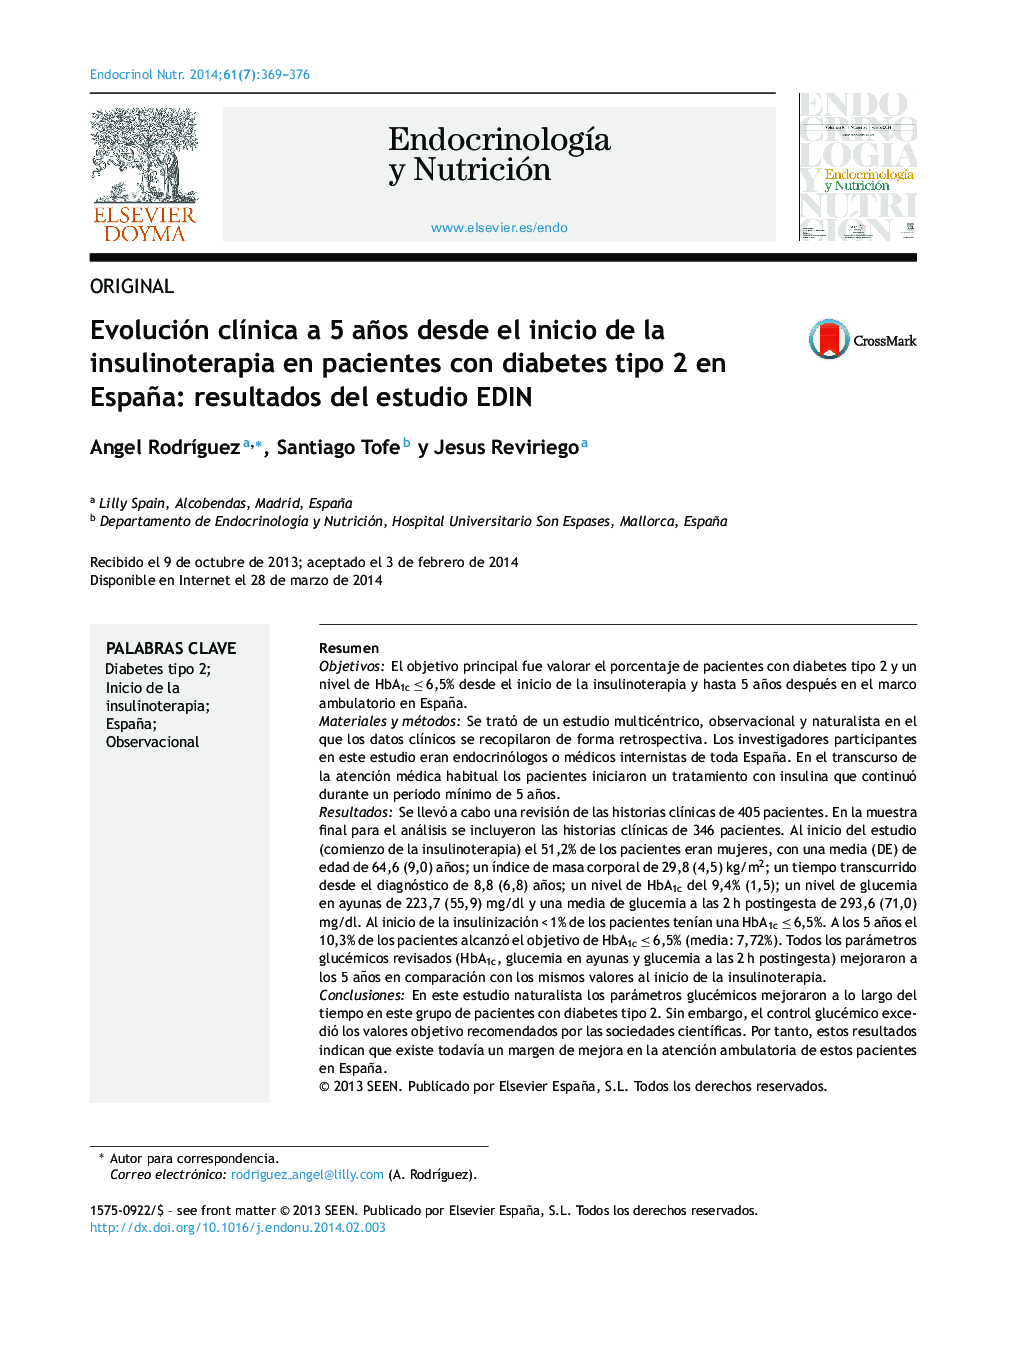 Evolución clínica a 5 años desde el inicio de la insulinoterapia en pacientes con diabetes tipo 2 en España: resultados del estudio EDIN